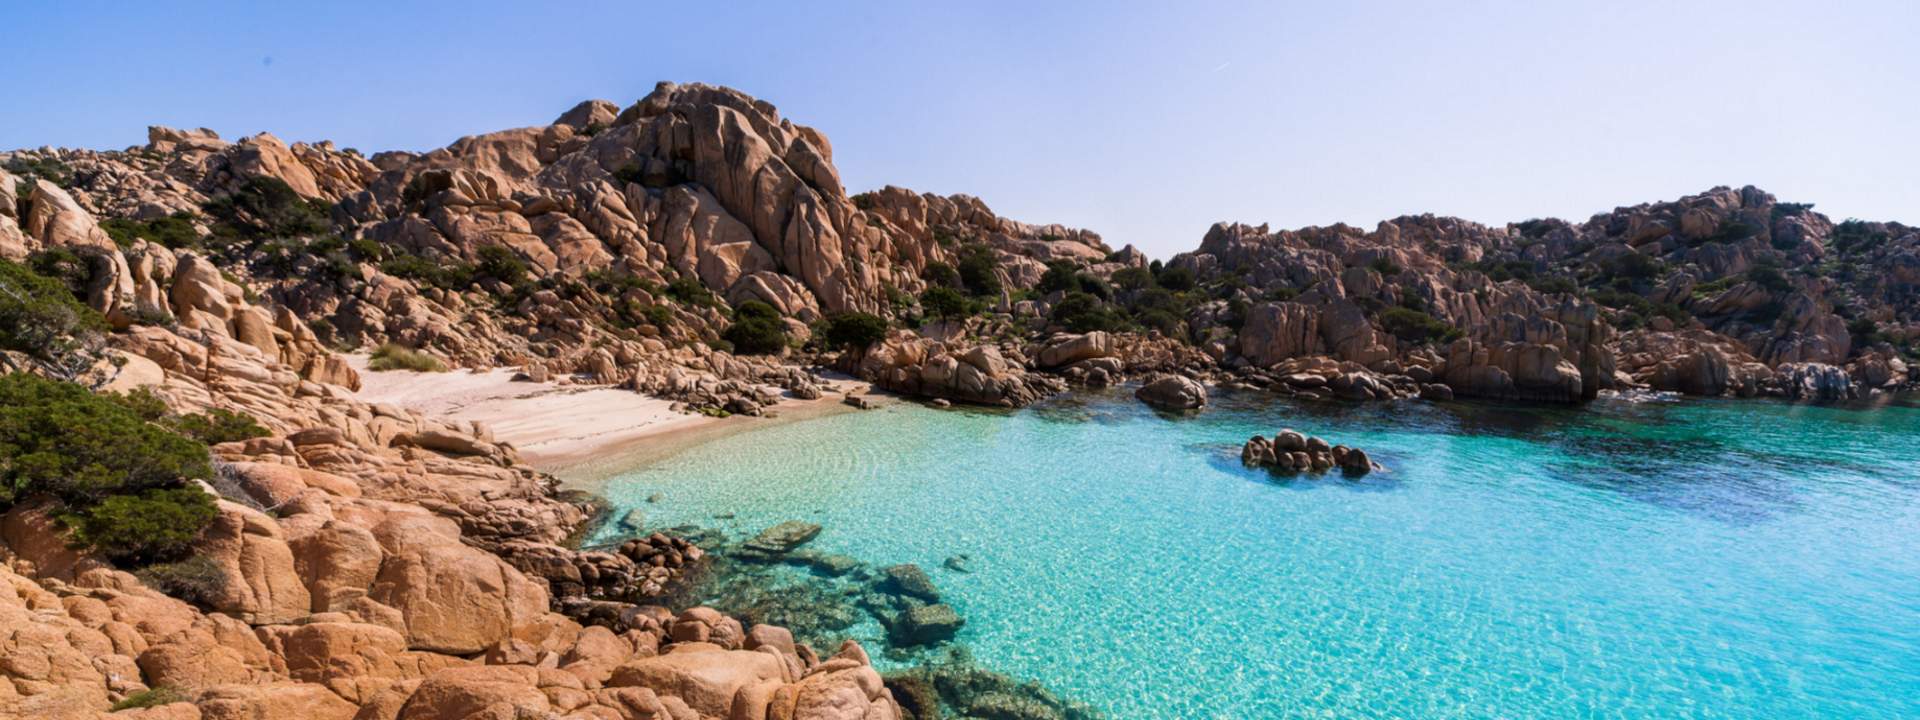 Segeln Sie von Sardinien bis nach Korsika an Bord einer luxuriösen Gulet!